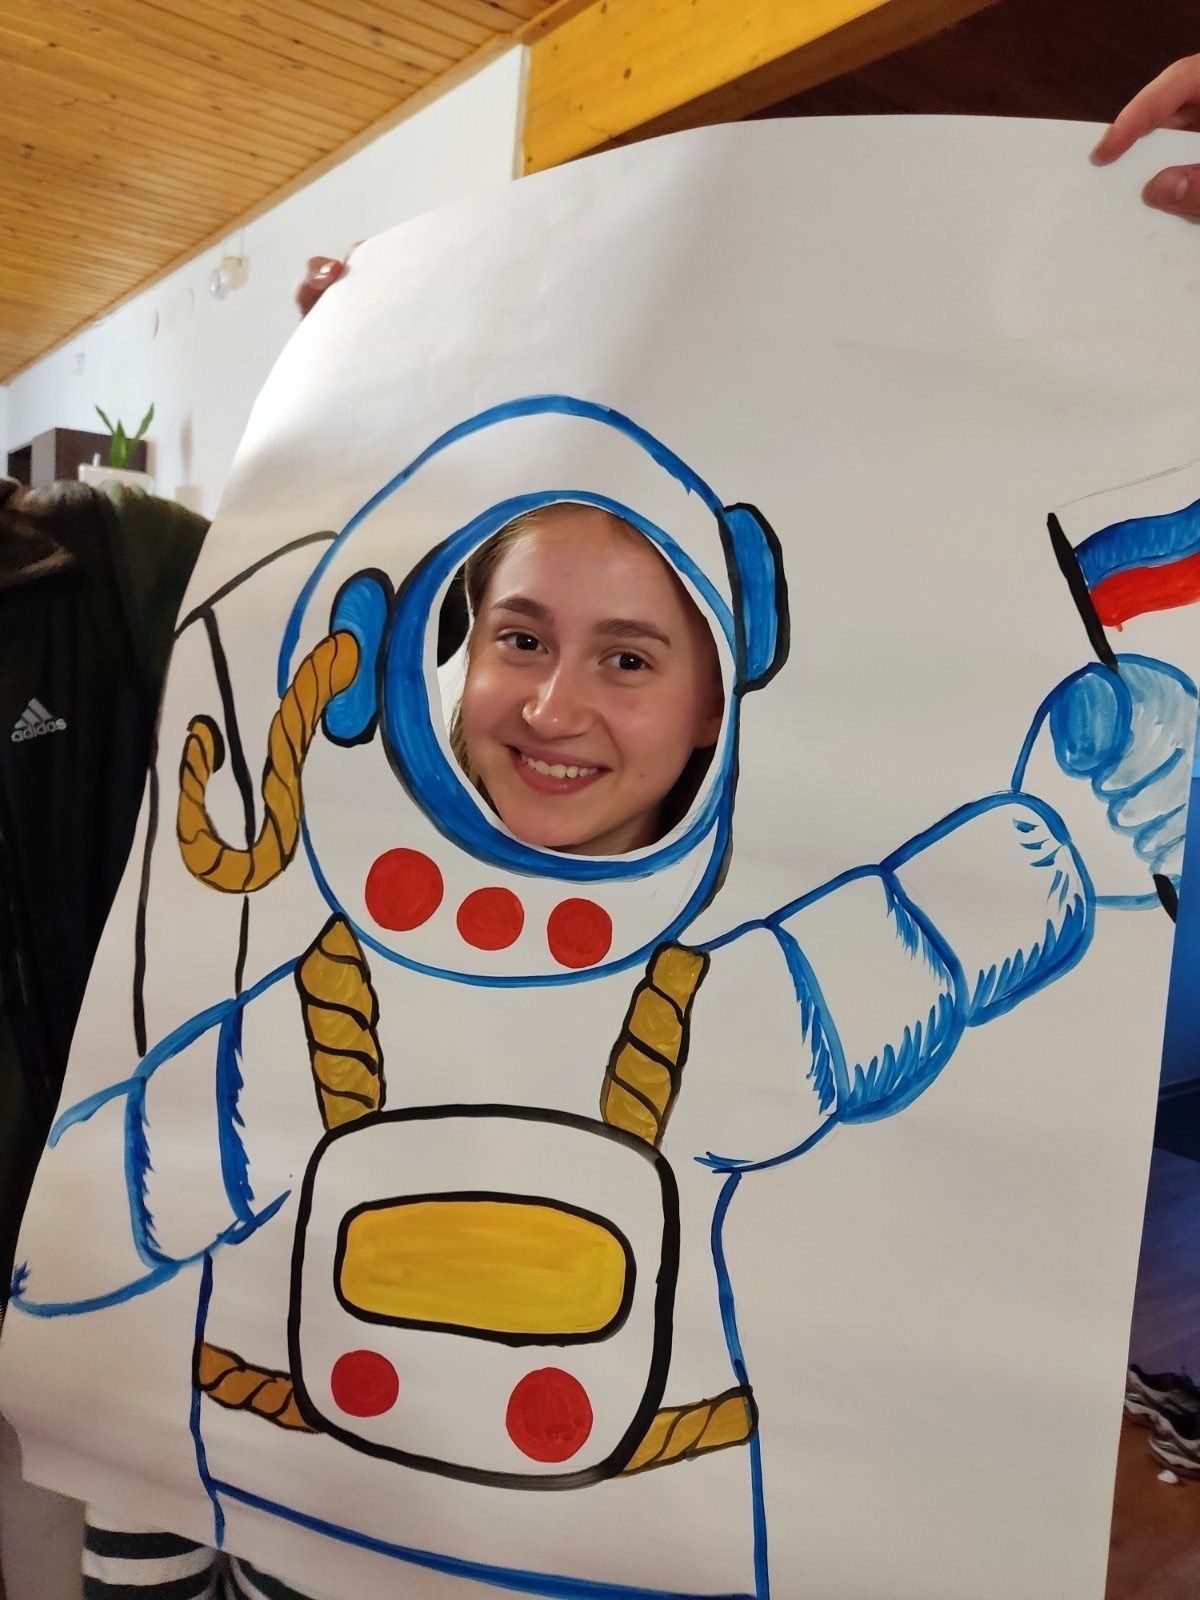 Сегодня празднуется день космонавтики!